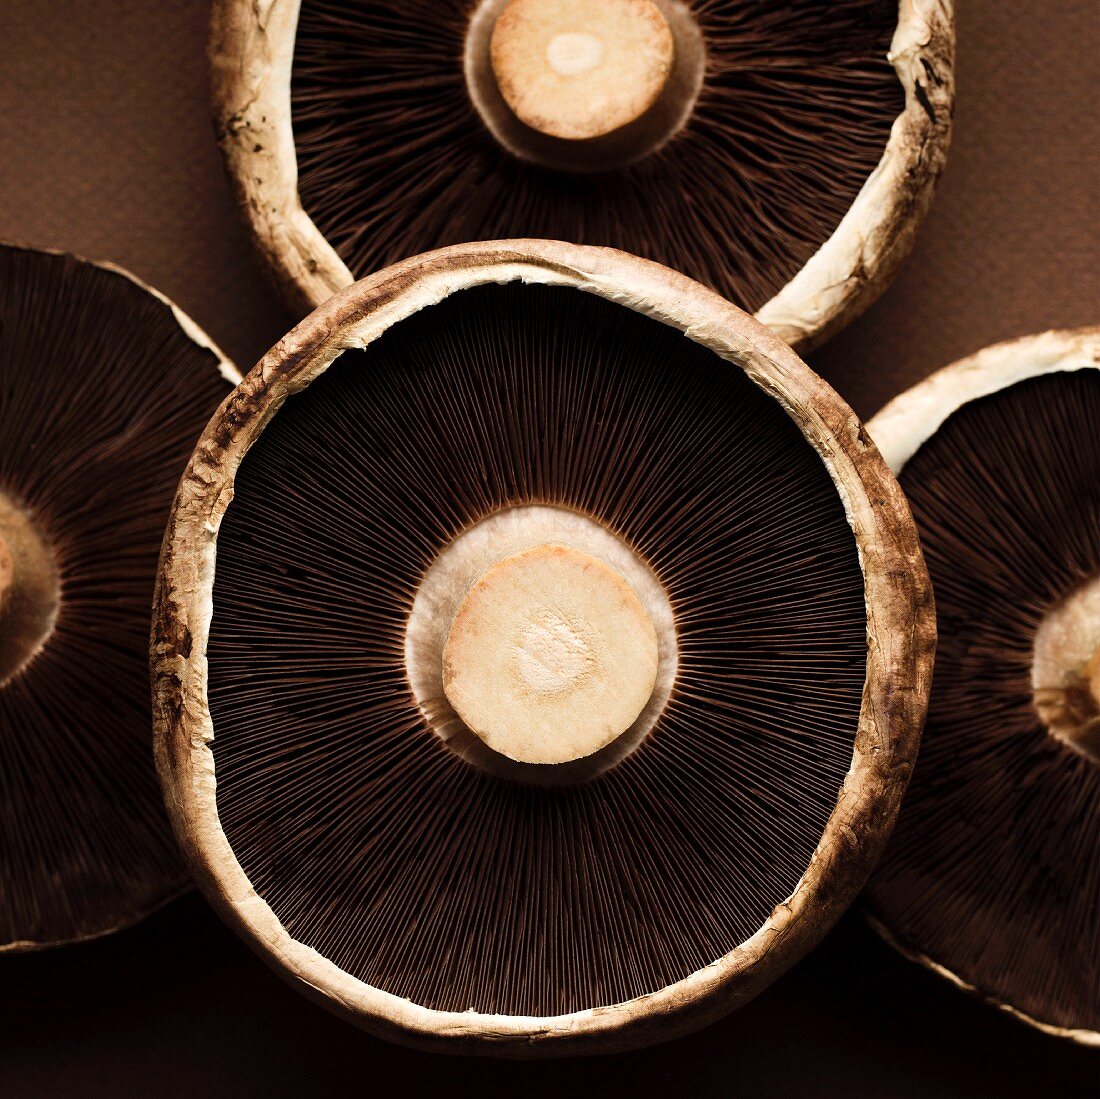 The undersides of portobello mushrooms (close-up)